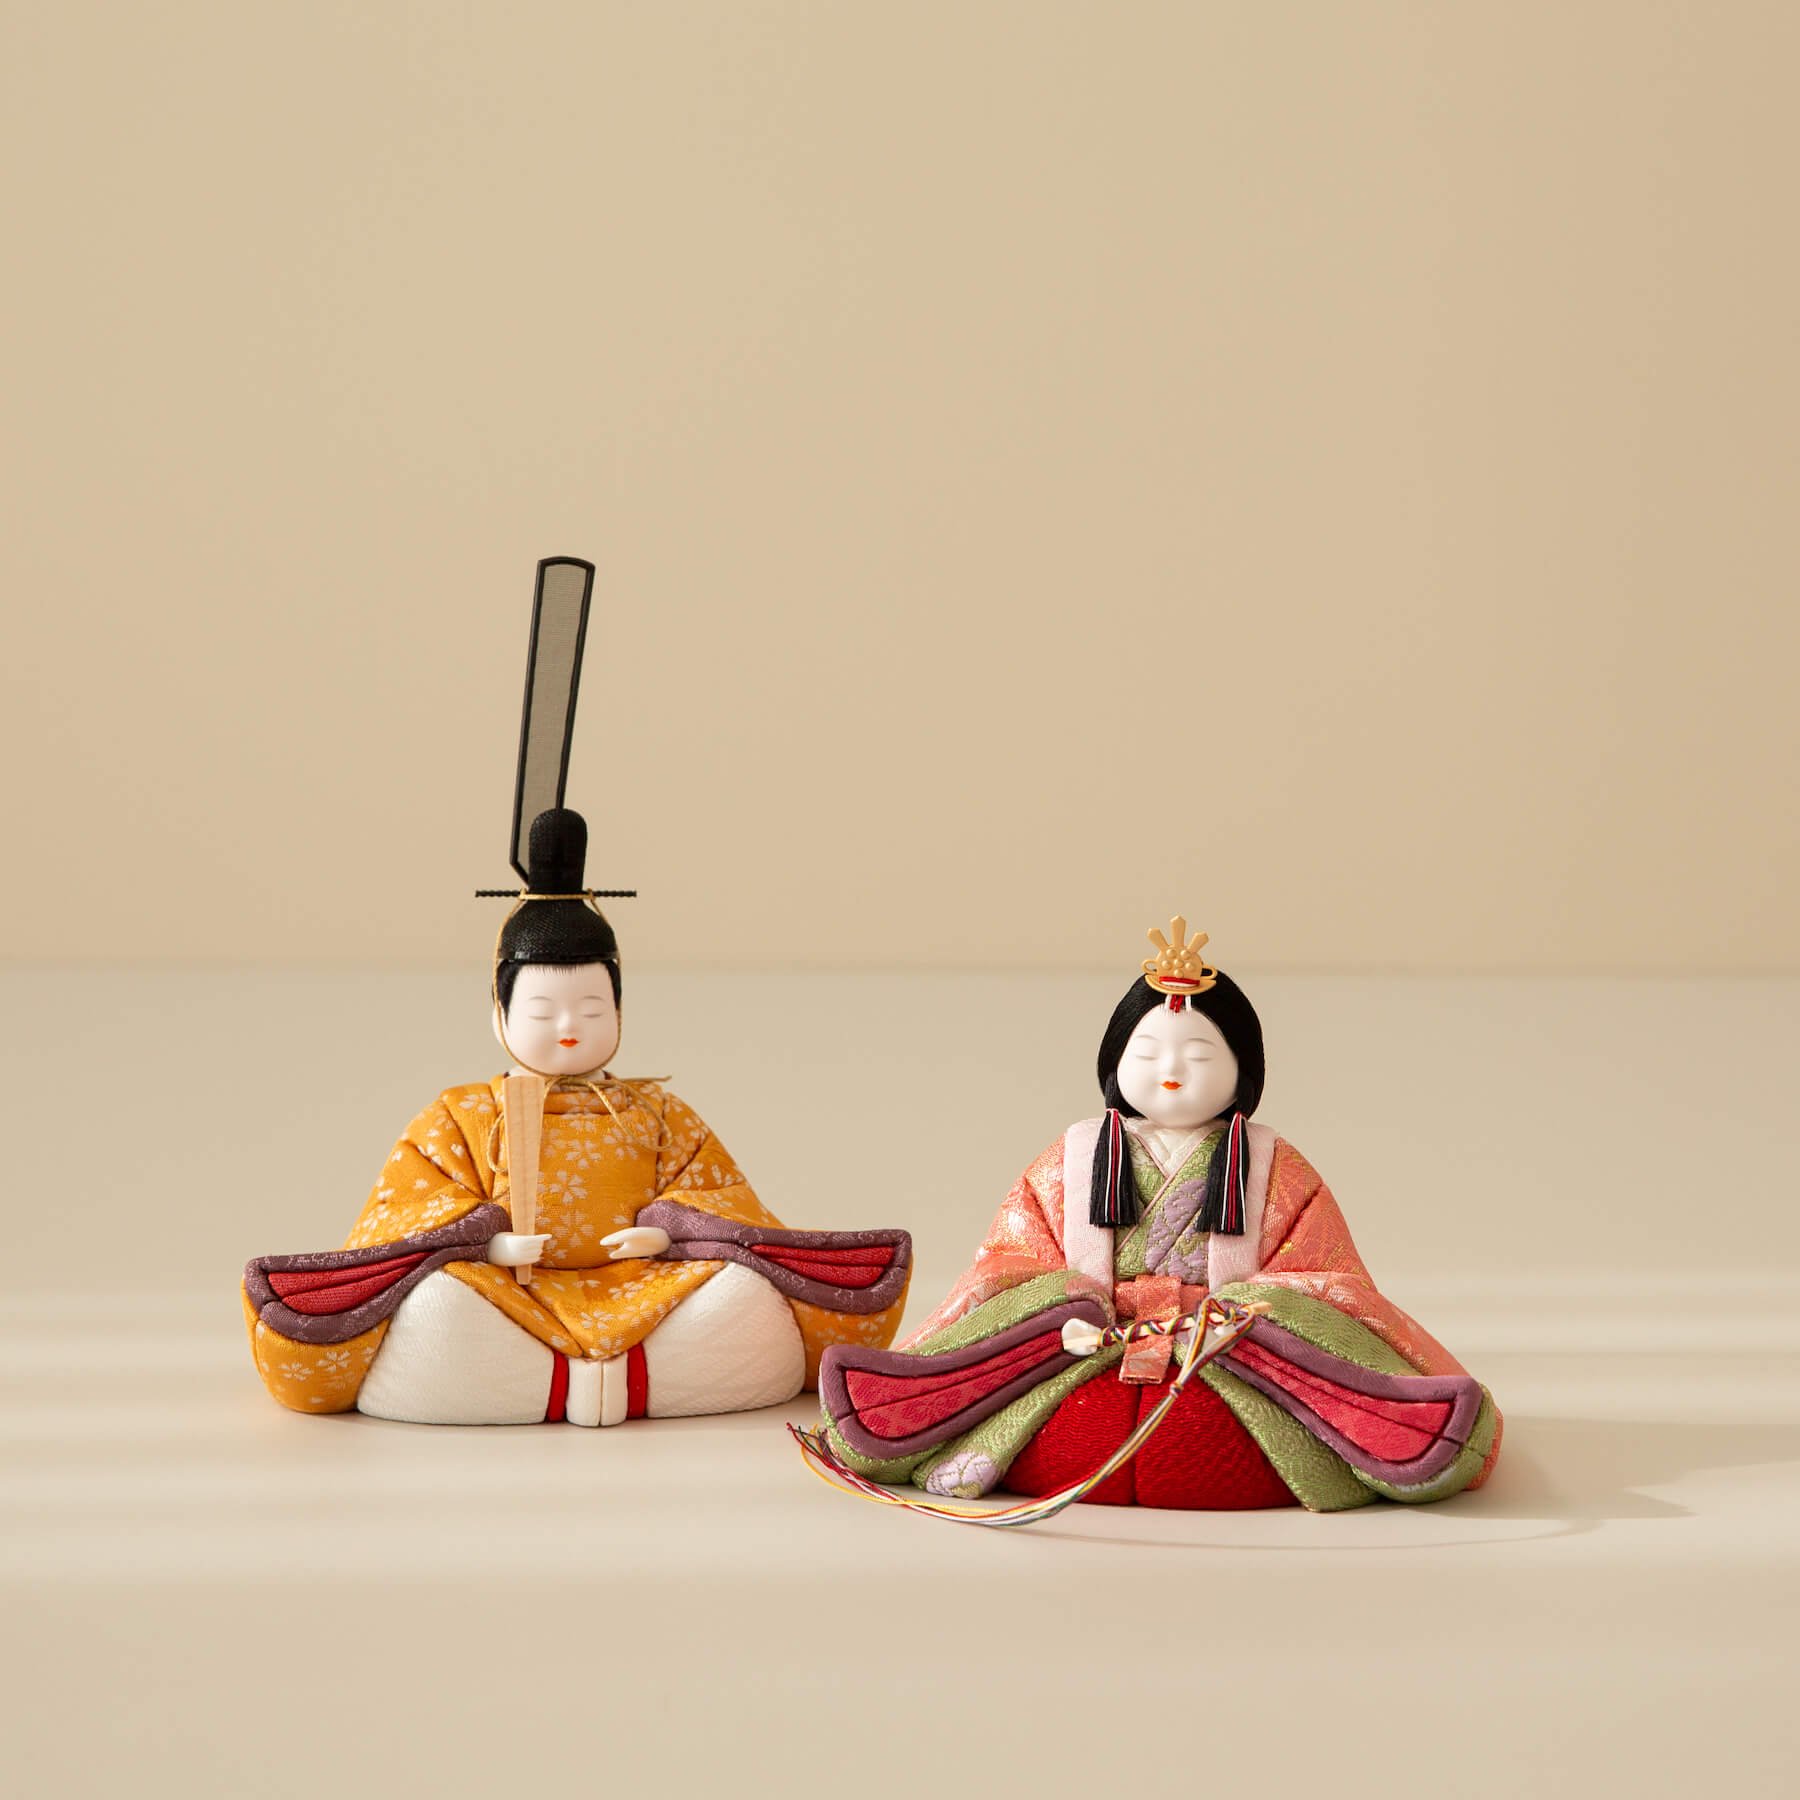 是非ご自宅へお飾りくださいハンドメイド作品/東京木目込み人形の高級特大羽子板